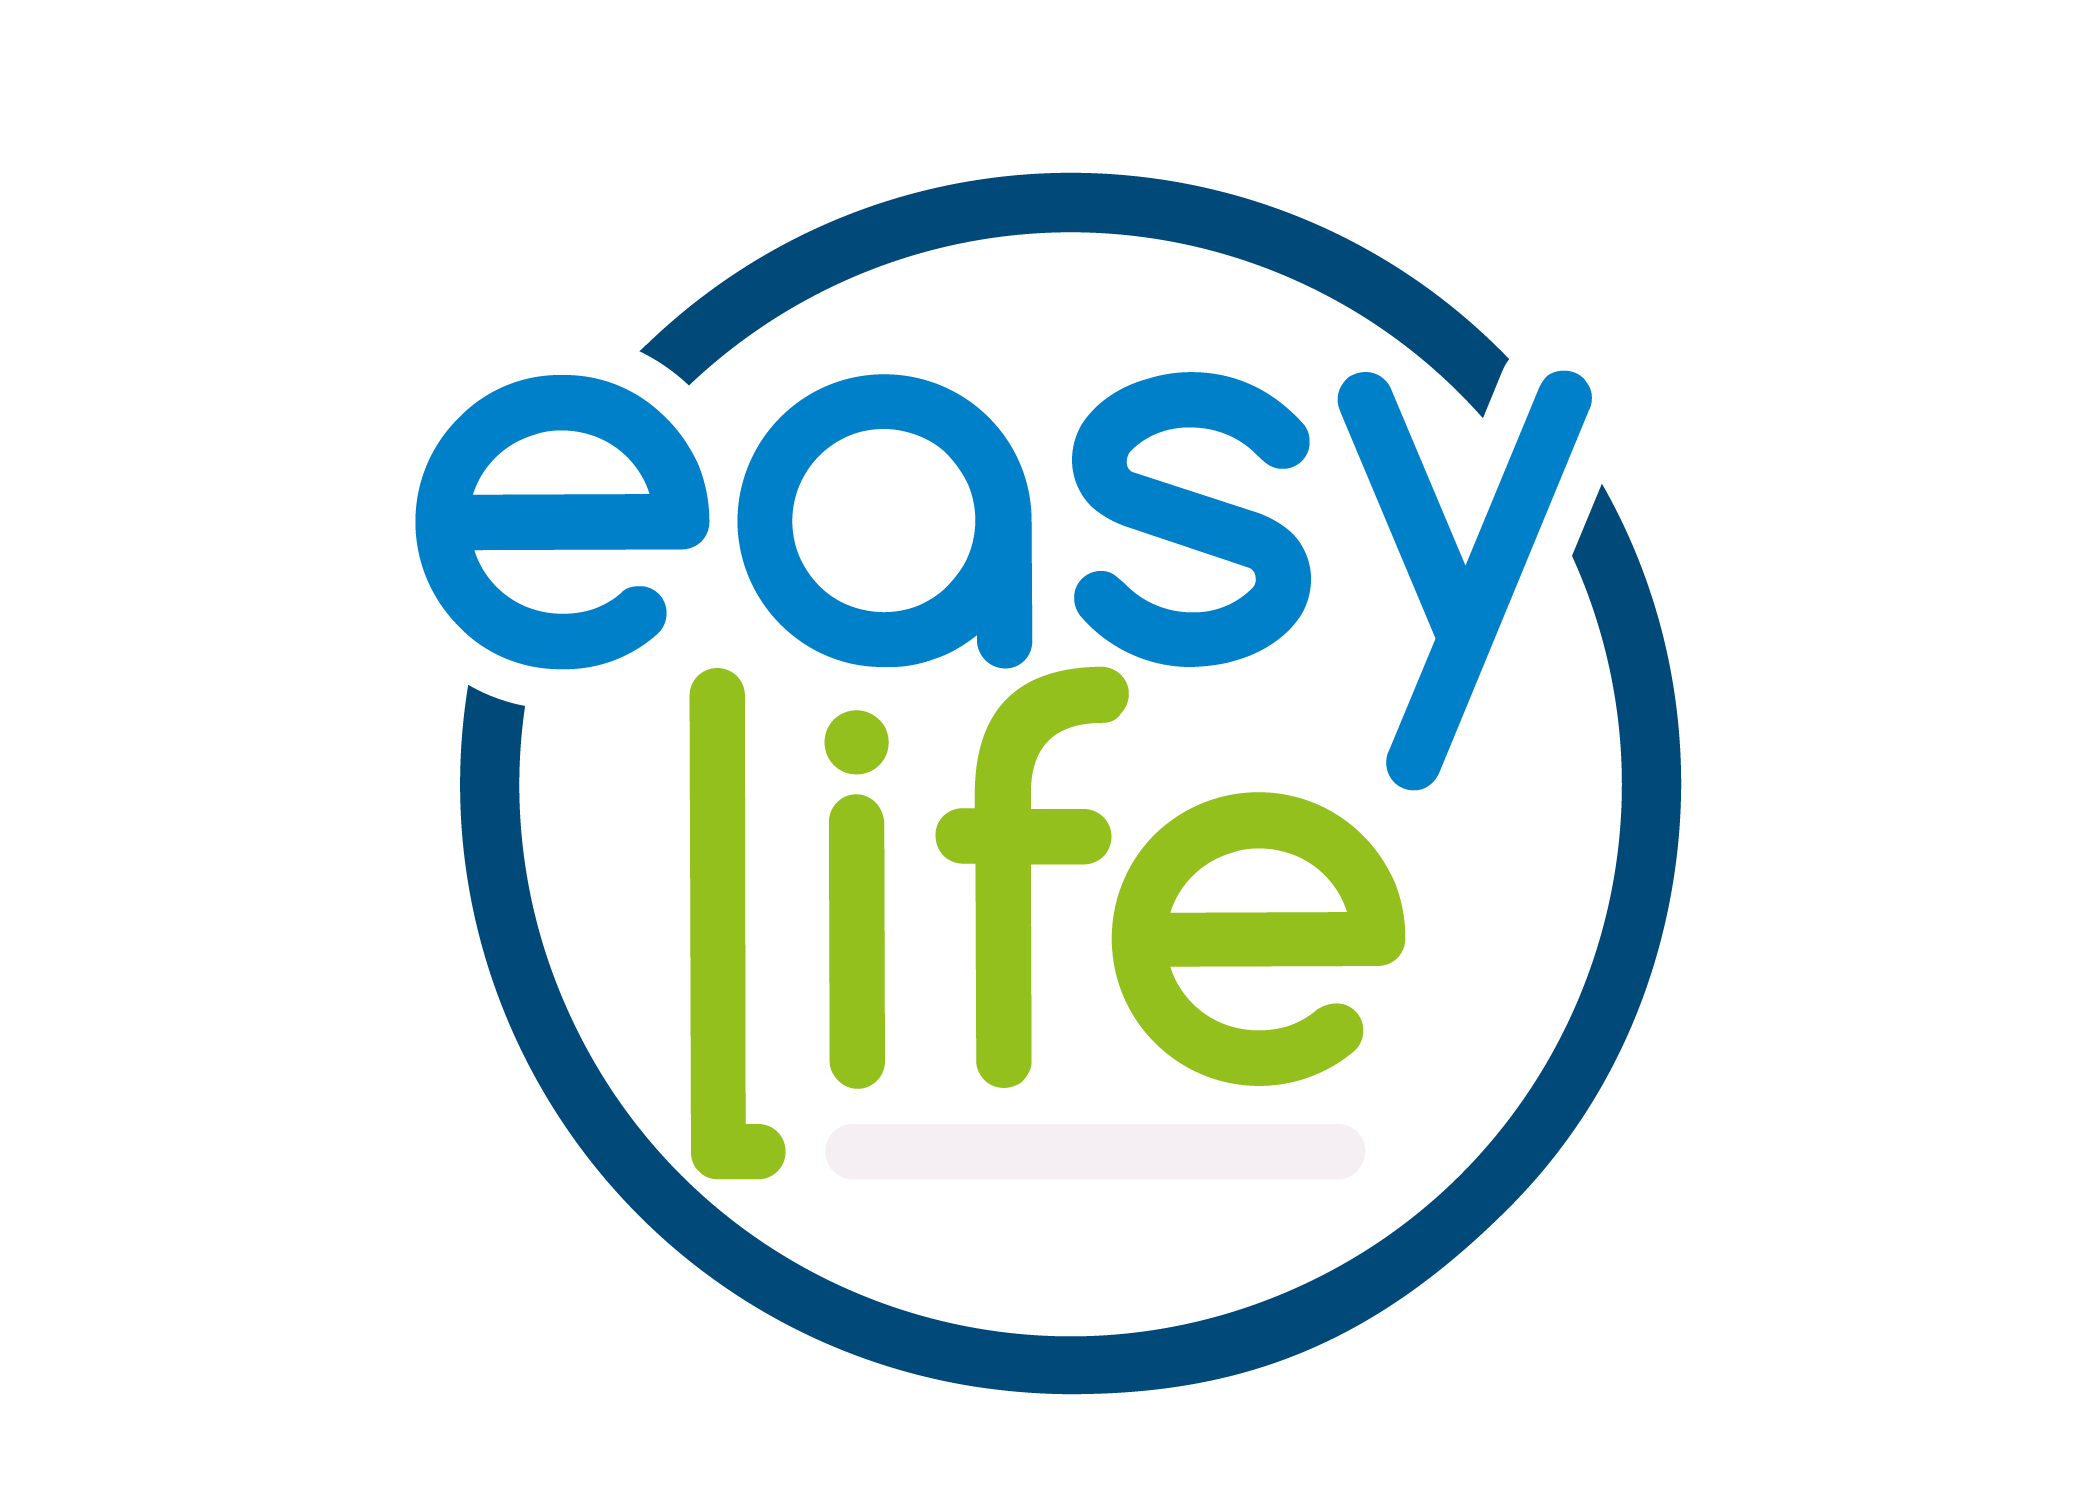 Easy life